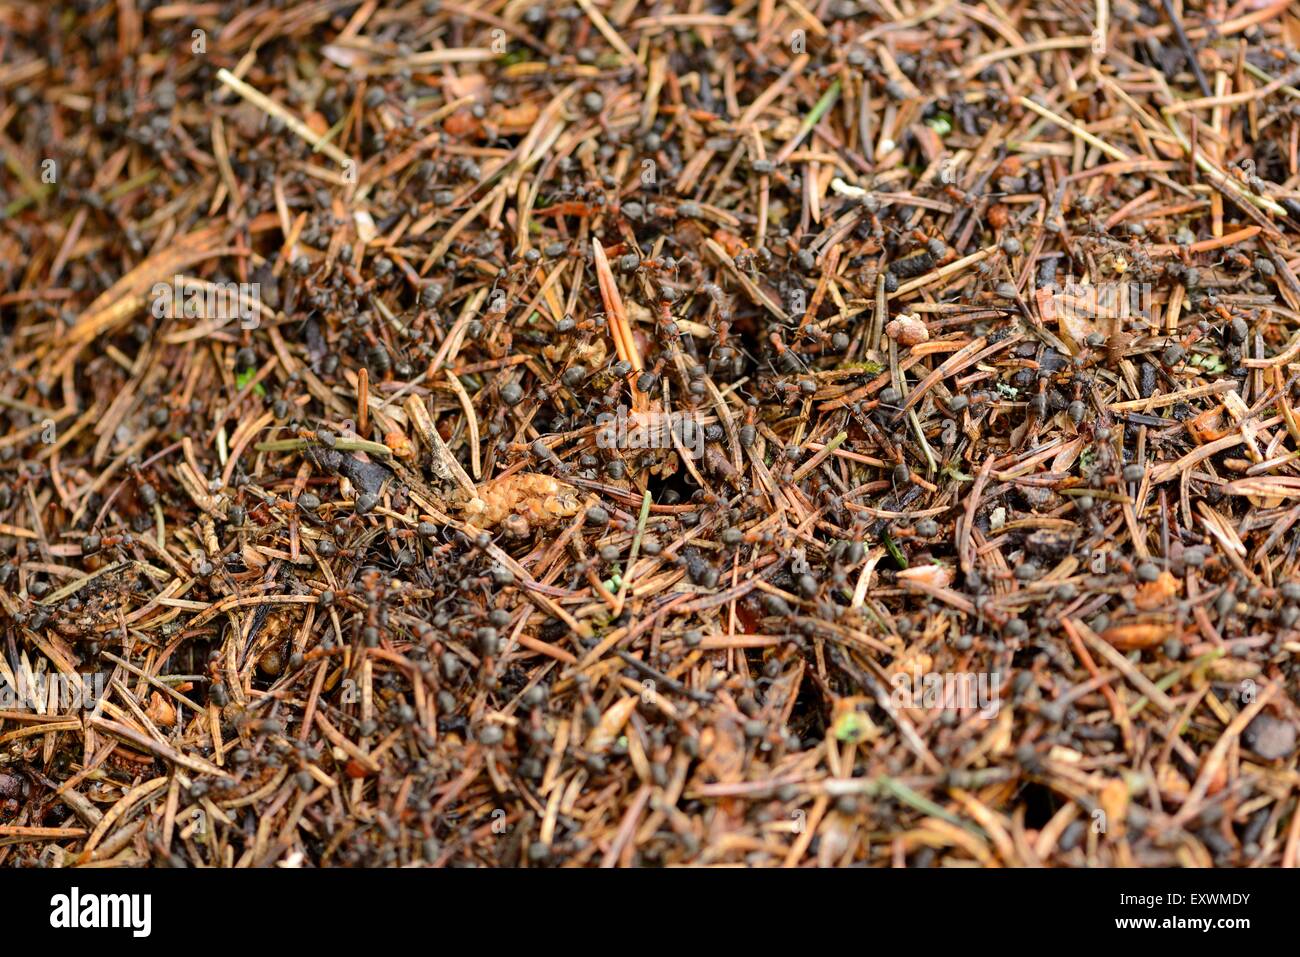 Las hormigas en un hormiguero de madera Foto de stock